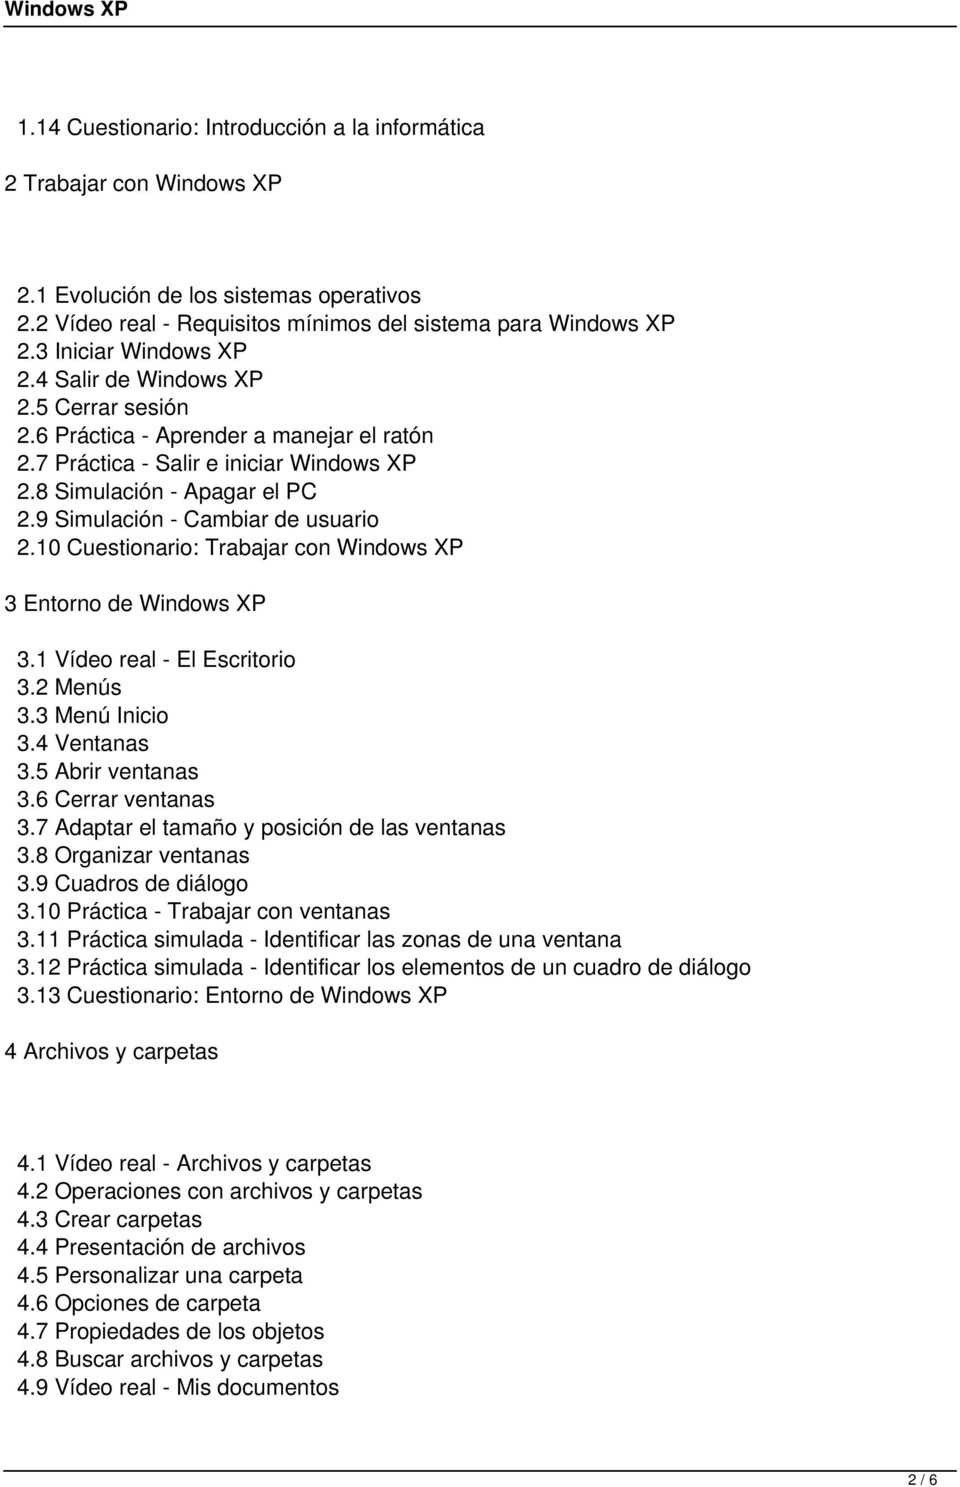 9 Simulación - Cambiar de usuario 2.10 Cuestionario: Trabajar con Windows XP 3 Entorno de Windows XP 3.1 Vídeo real - El Escritorio 3.2 Menús 3.3 Menú Inicio 3.4 Ventanas 3.5 Abrir ventanas 3.